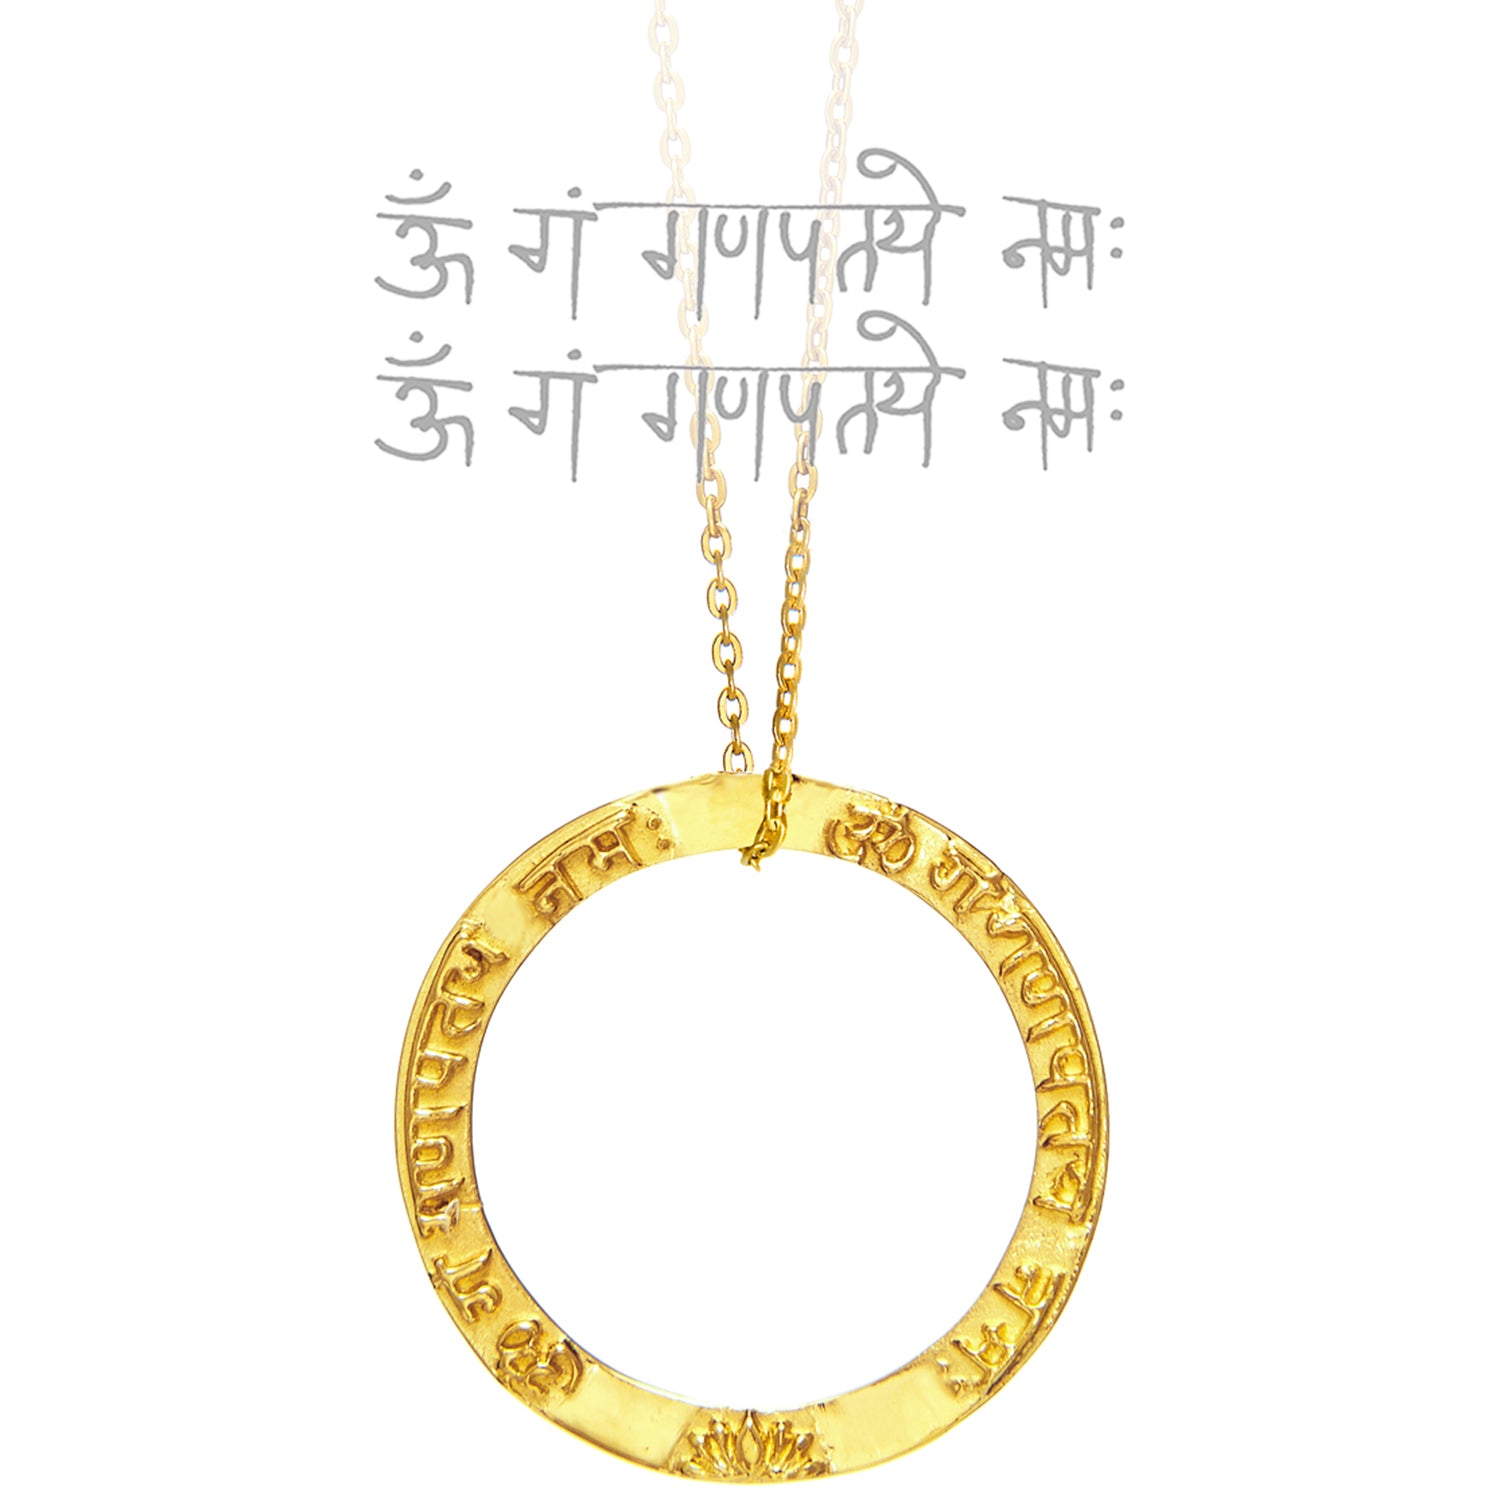 Ringförmiger Ganesha Mantra Anhänger  aus vergoldetem Sterling Silber von ETERNAL BLISS aus der spirituellen Yoga Schmuckkollektion